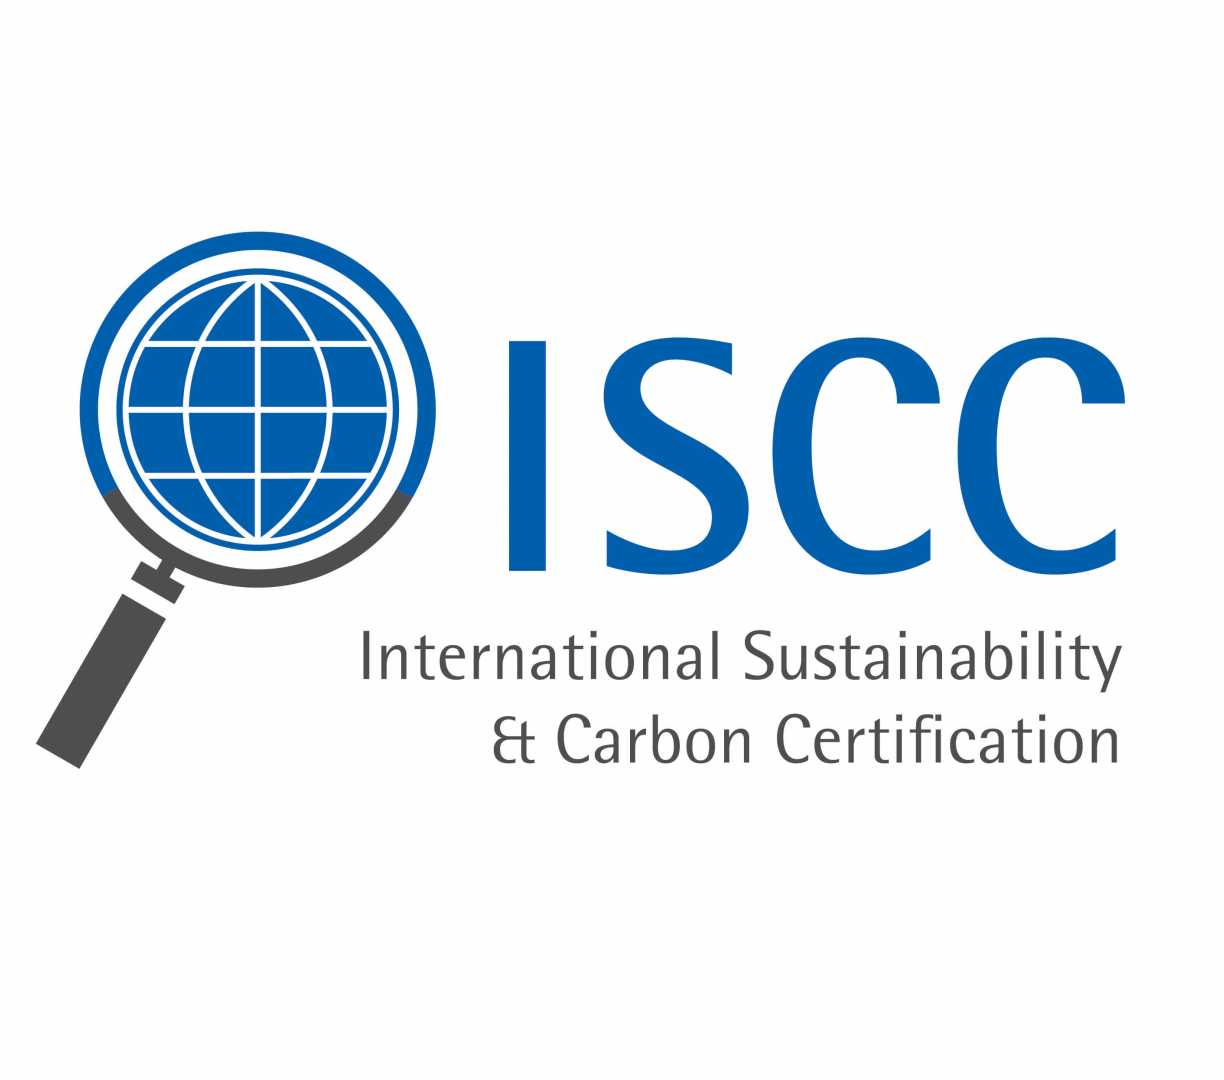 iscc_logo_1_